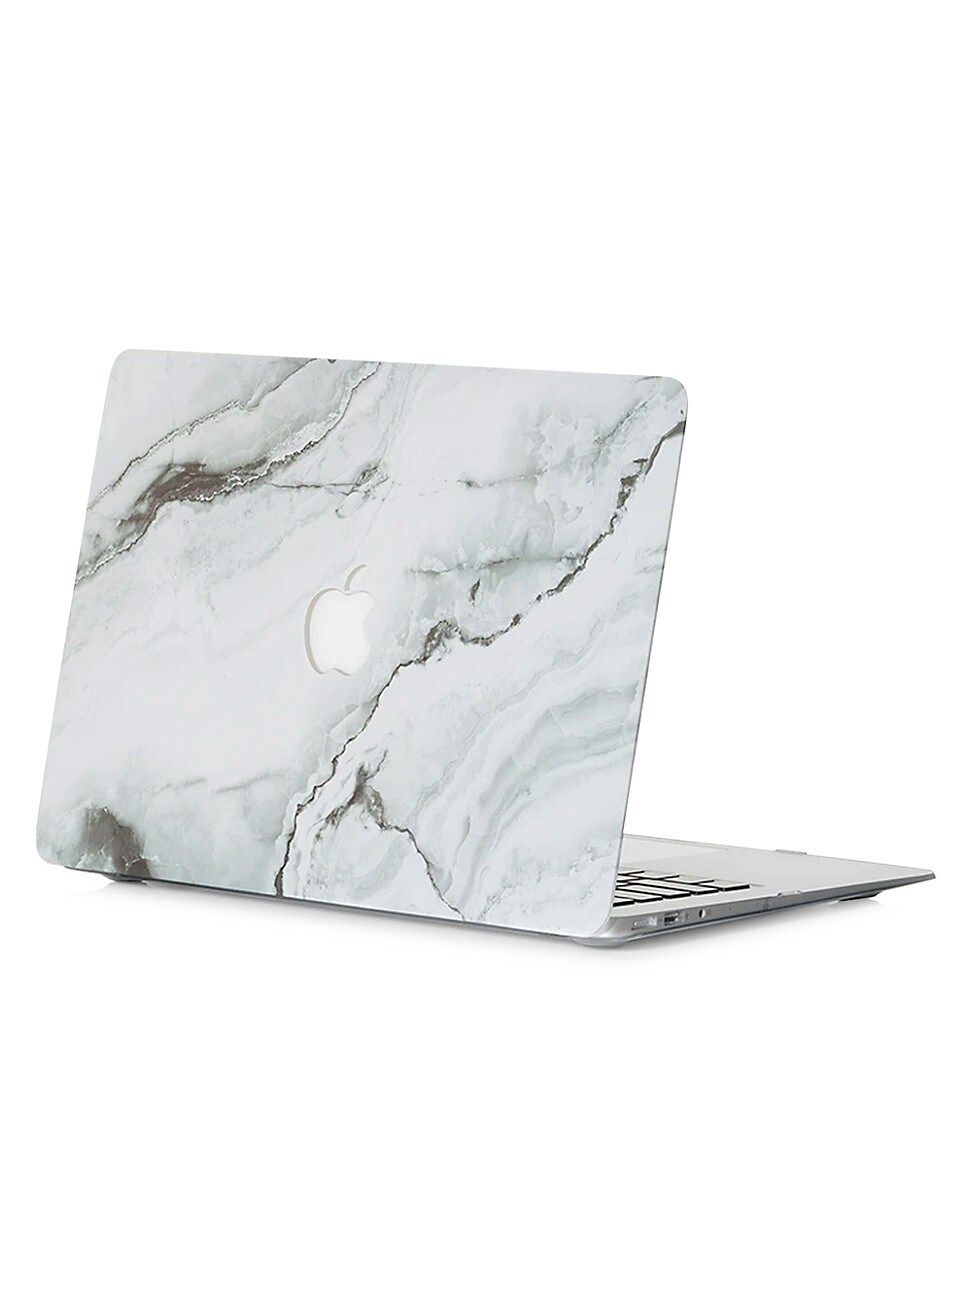 Chic Geeks Marble MacBook Case - Grey Marble | Saks Fifth Avenue